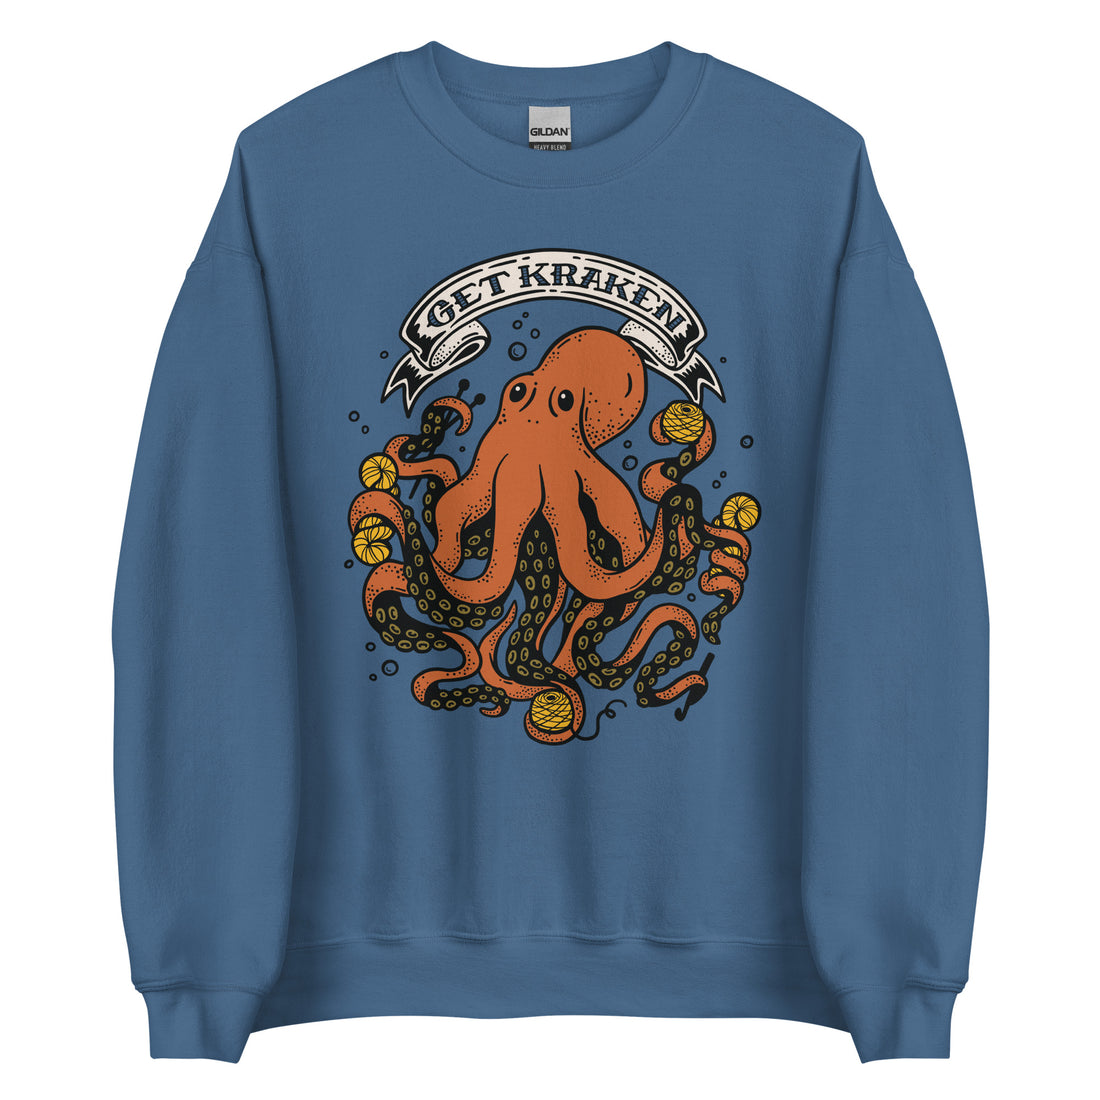 Get Kraken Sweatshirt